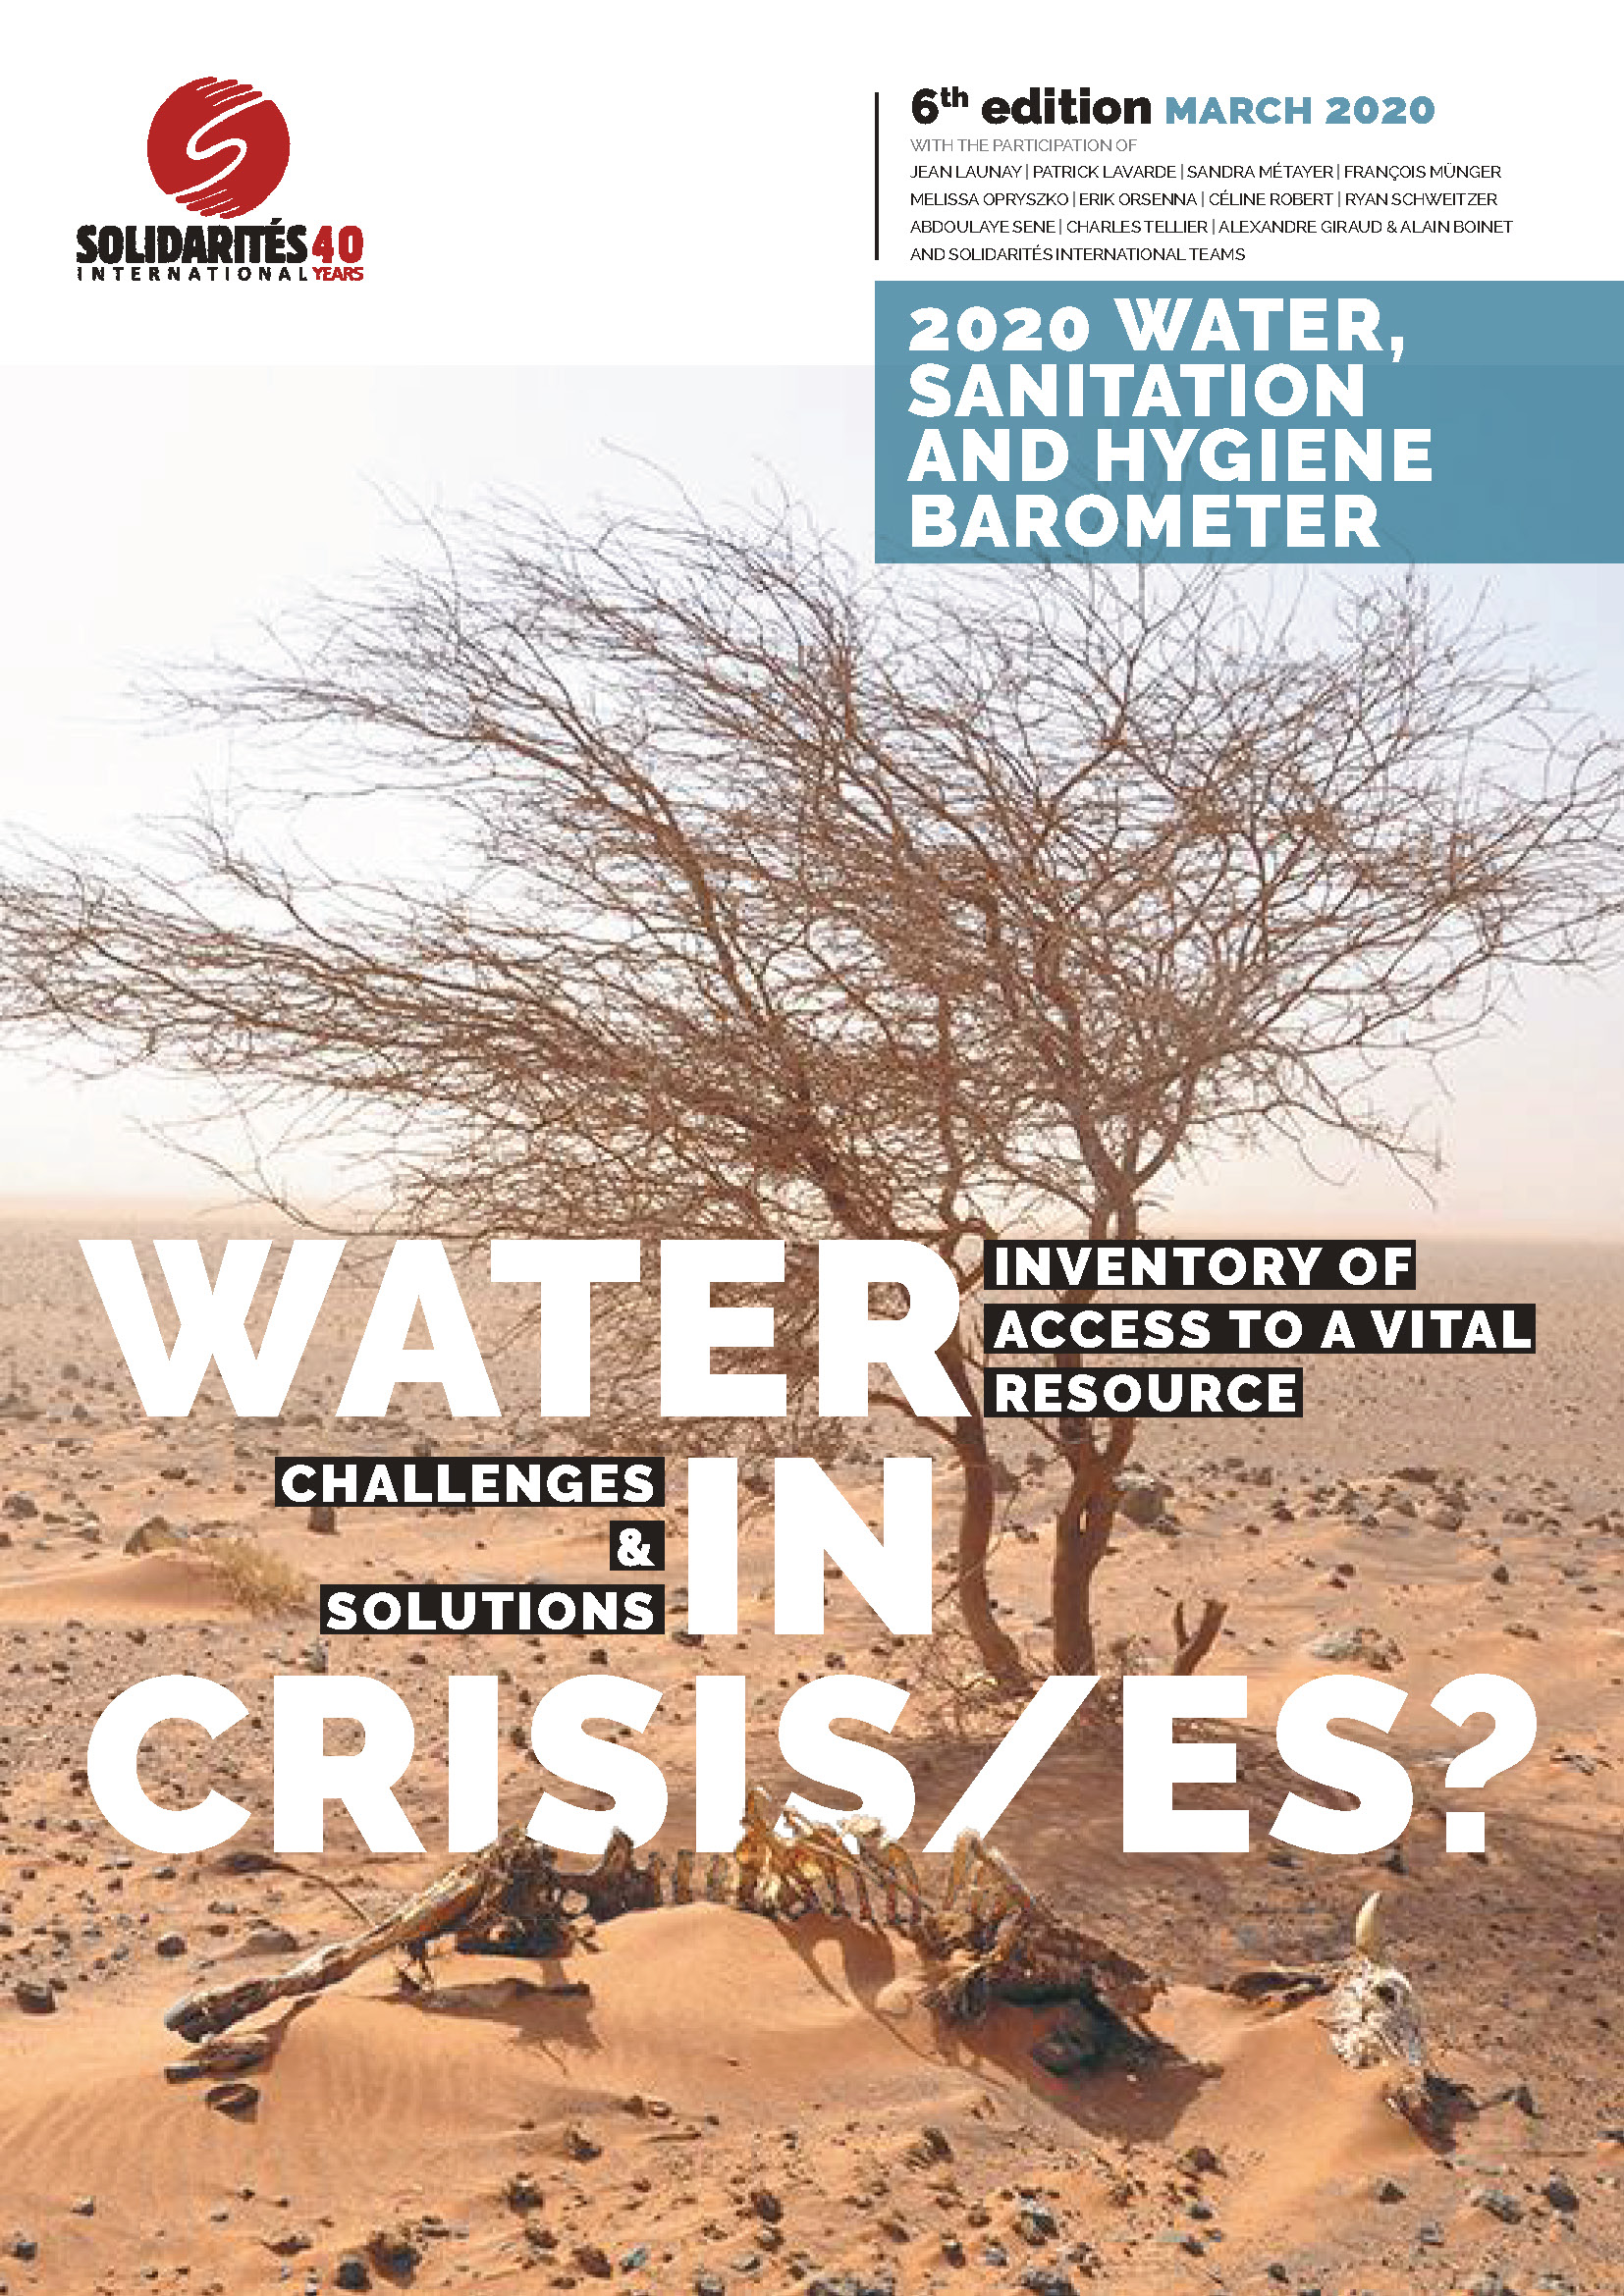 solidarites_2020_water-hygiene-barometer_page_01.jpg